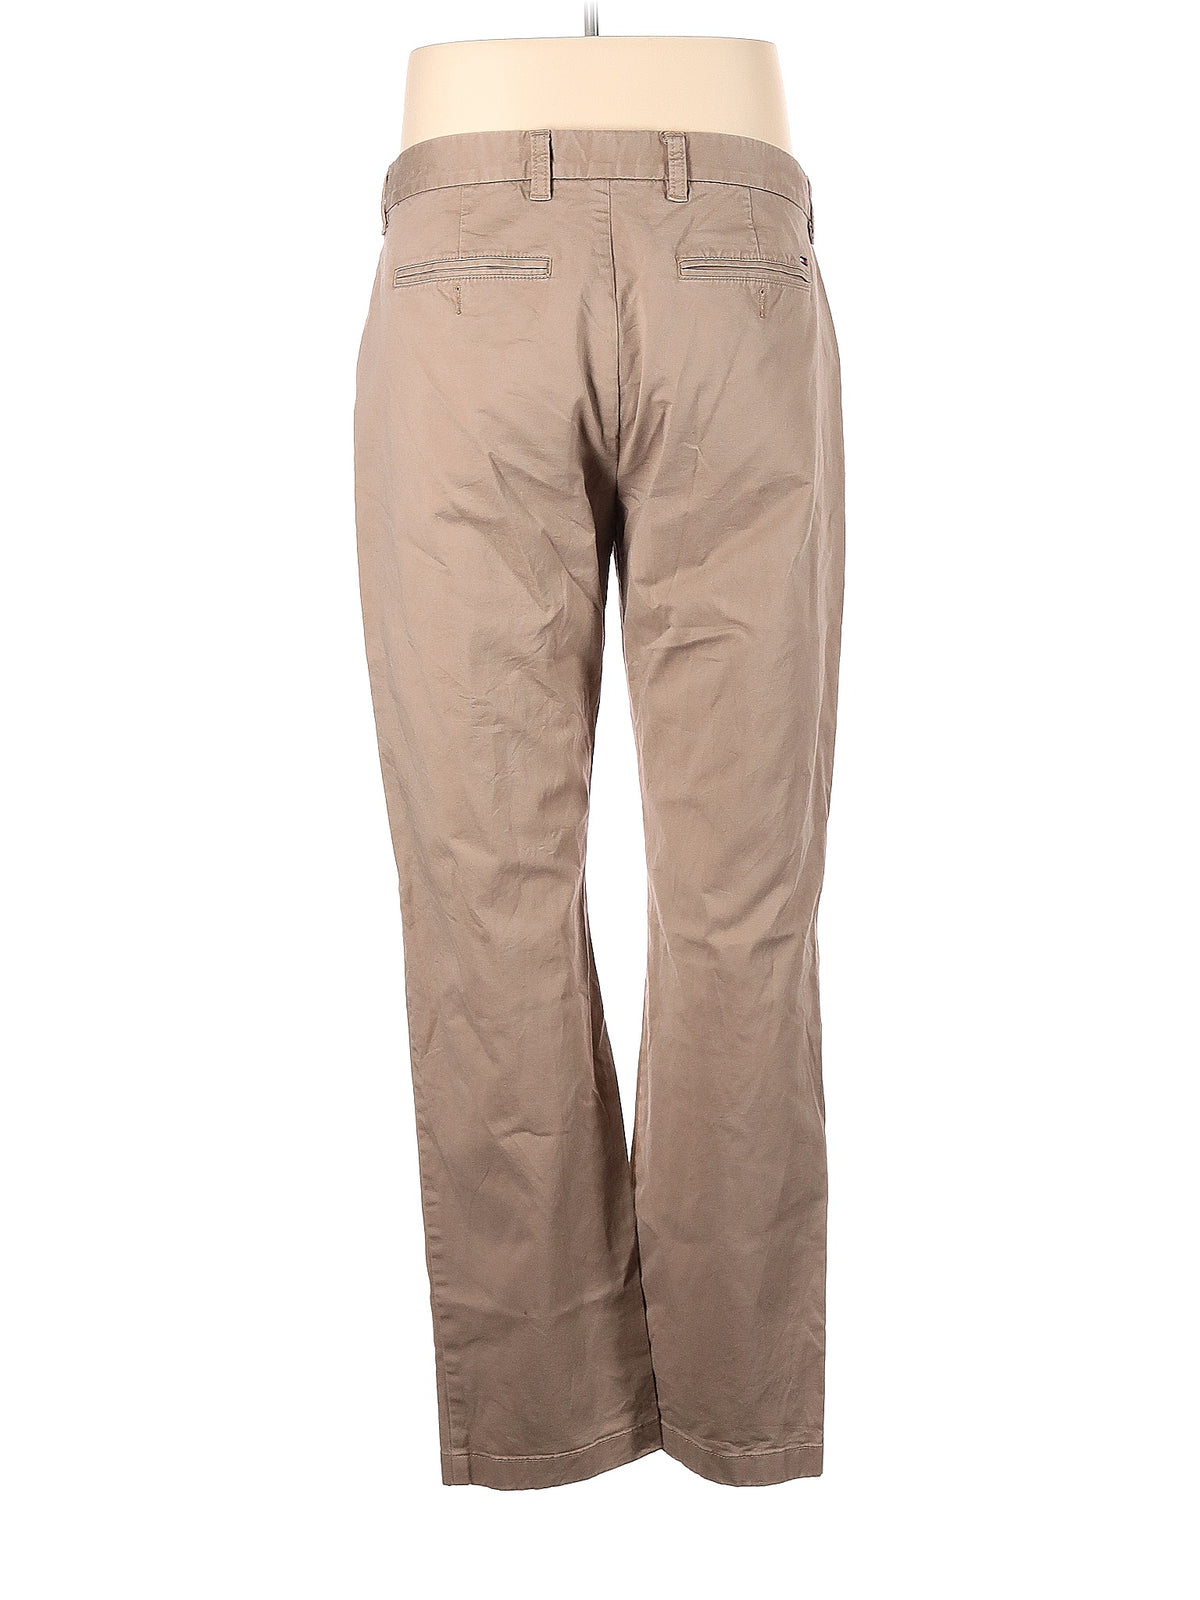 Khaki/Chino Pants size - 35 (W35 L32)